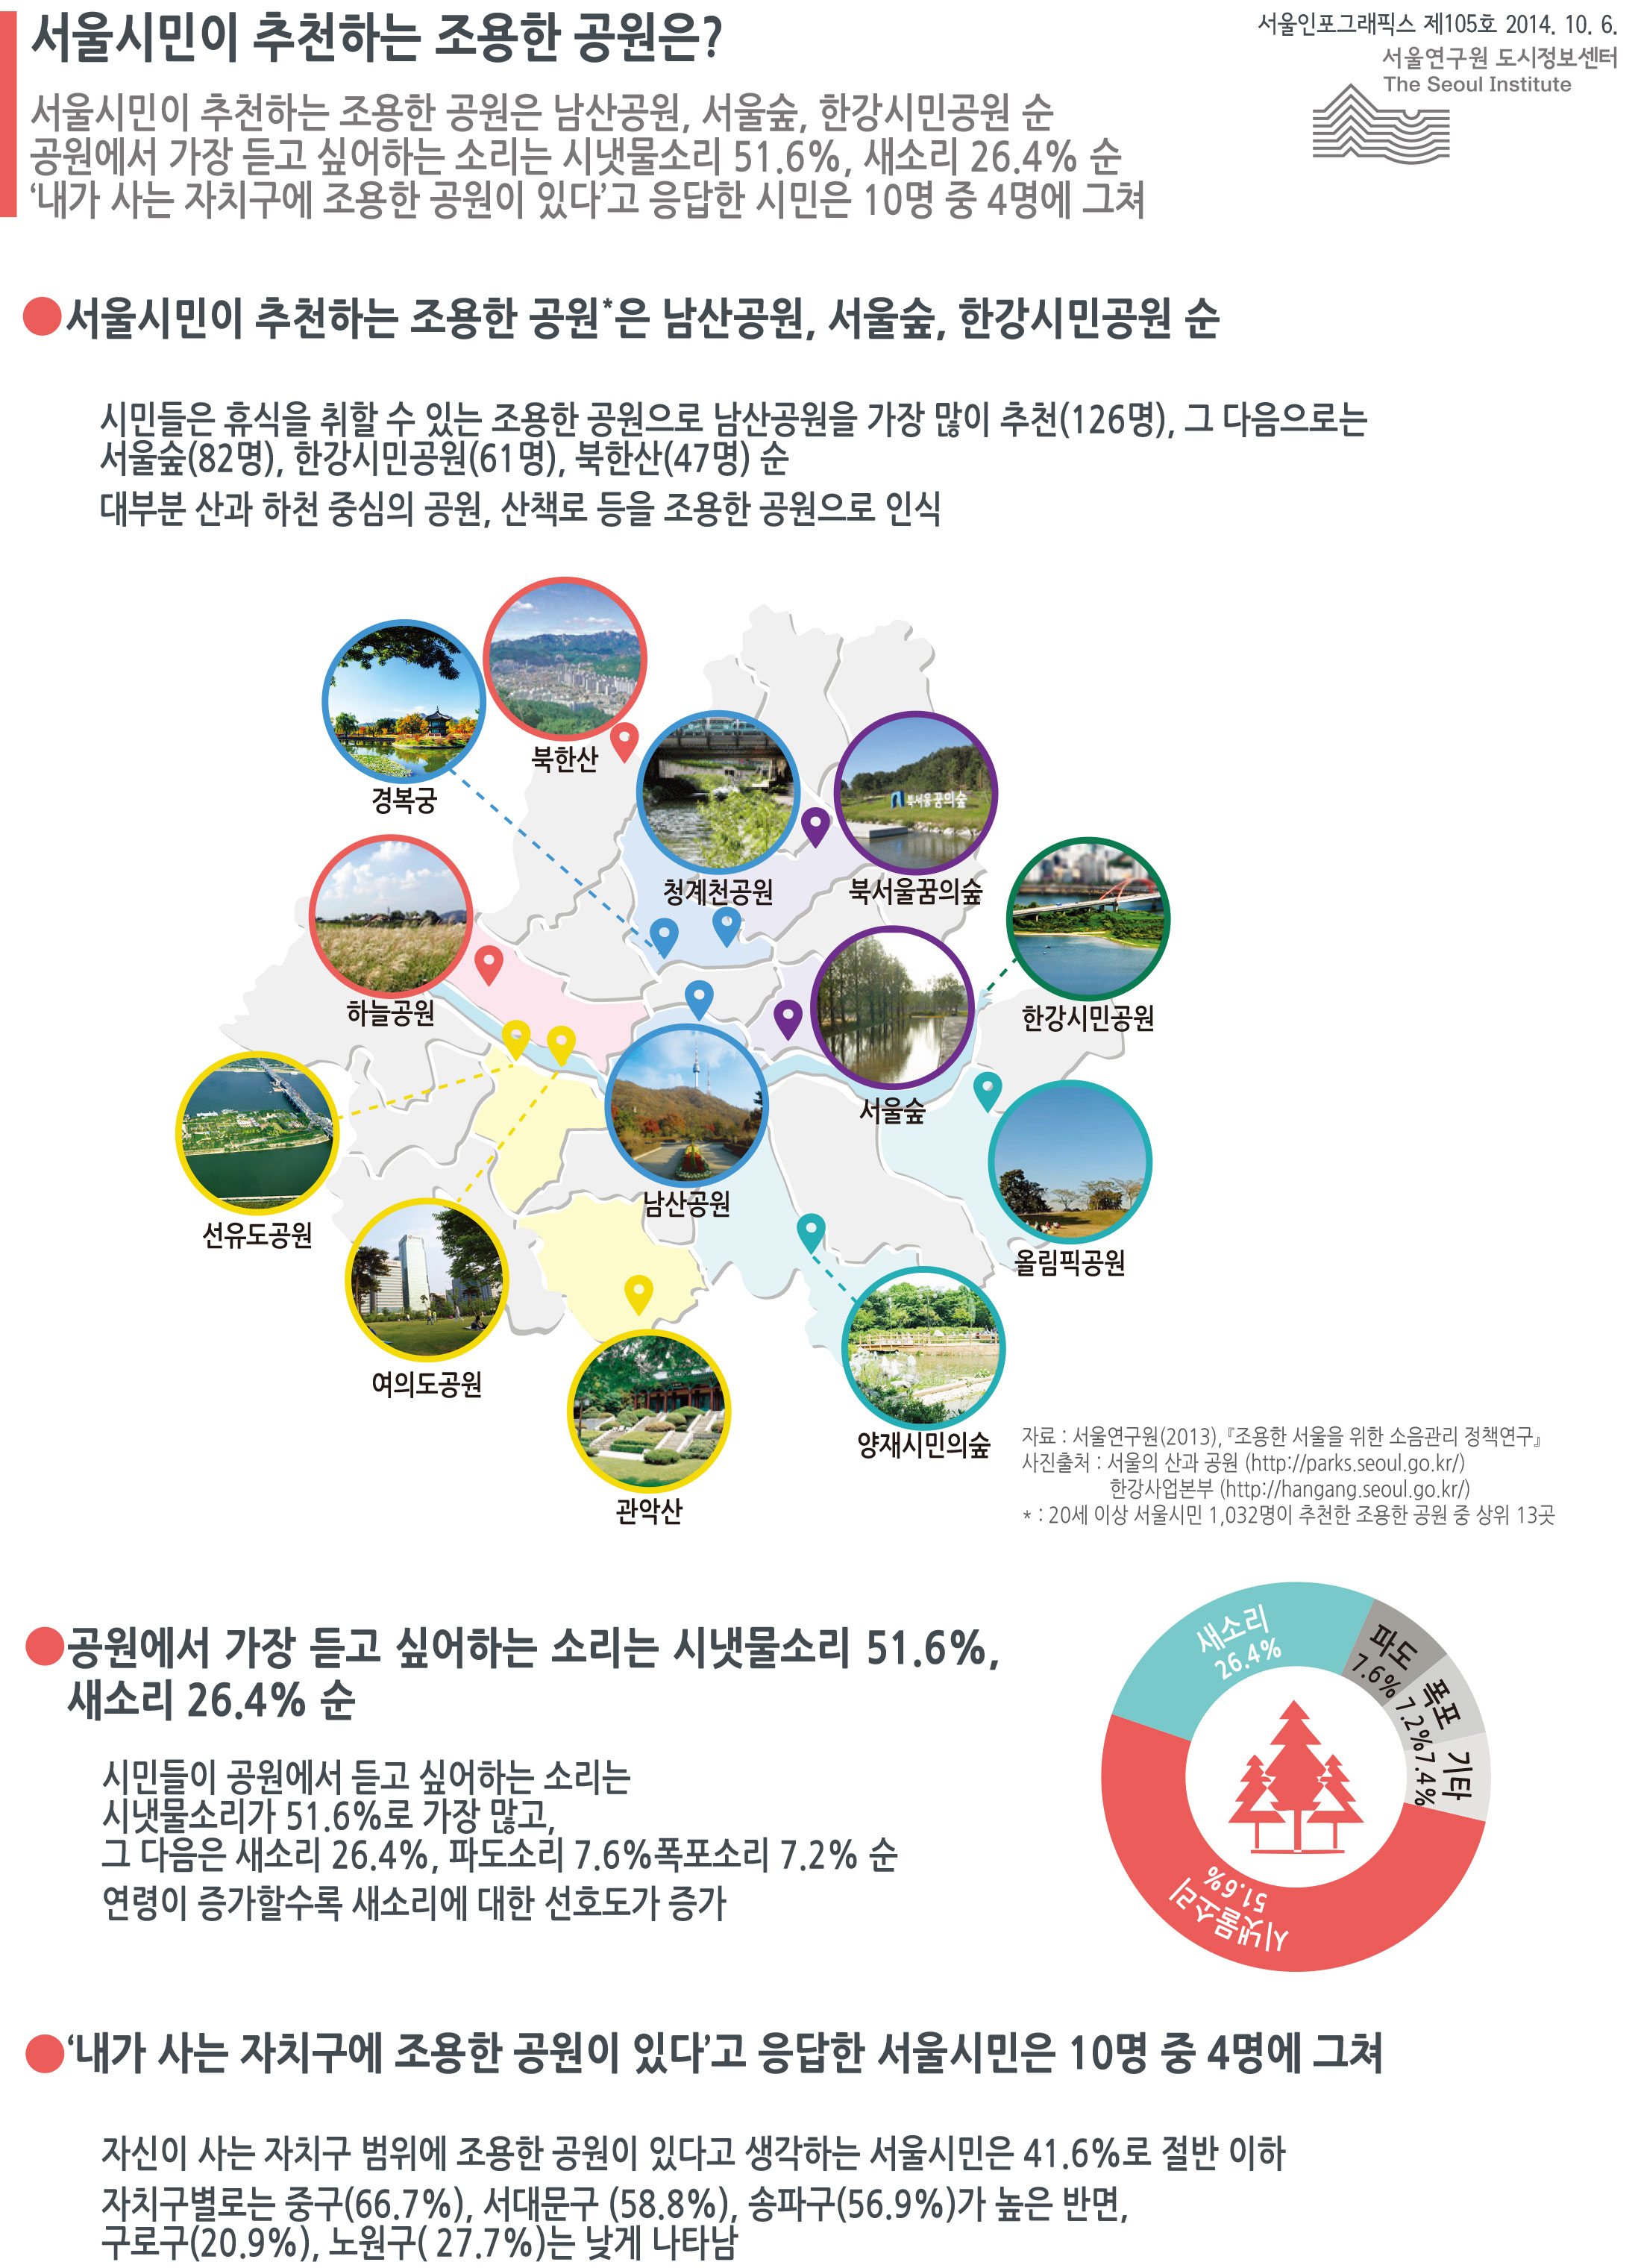 서울시민이 추천하는 조용한 공원은? 서울인포그래픽스 제105호 2014년 10월 6일 서울시민이 추천하는 조용한 공원은 남산공원, 서울숲, 한강시민공원 순. 공원에서 가장 듣고 싶어하는 소리는 시냇물소리 51.6%, 새소리 26.4% 순. ‘내가 사는 자치구에 조용한 공원이 있다’고 응답한 시민은 10명 중 4명에 그침으로 정리될 수 있습니다. 인포그래픽으로 제공되는 그래픽은 하단에 표로 자세히 제공됩니다.